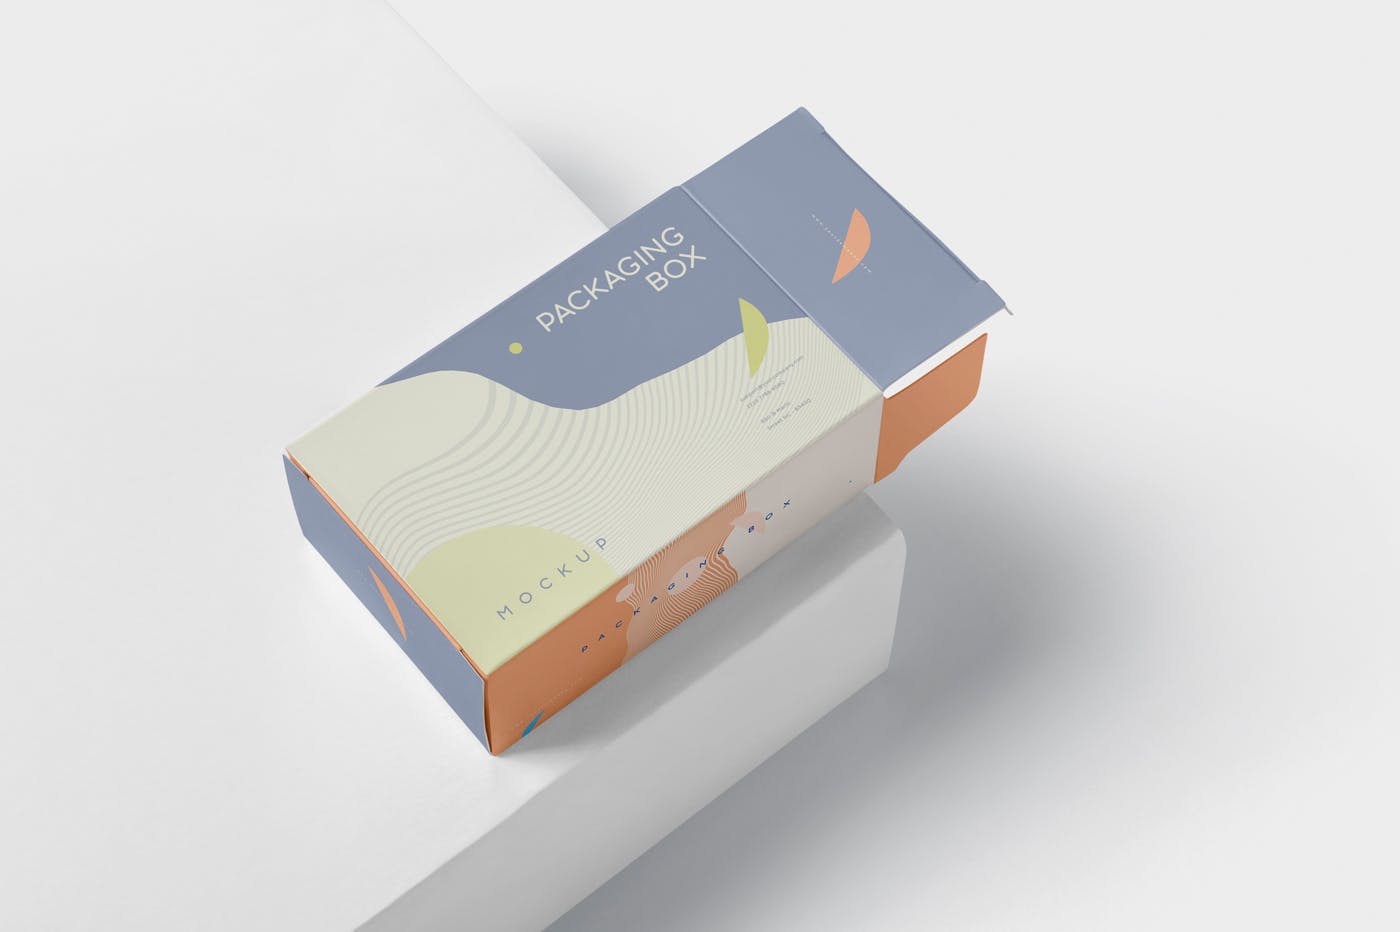 扁平矩形产品包装盒效果图第一素材精选 Package Box Mockup – Slim Rectangle Shape插图(3)